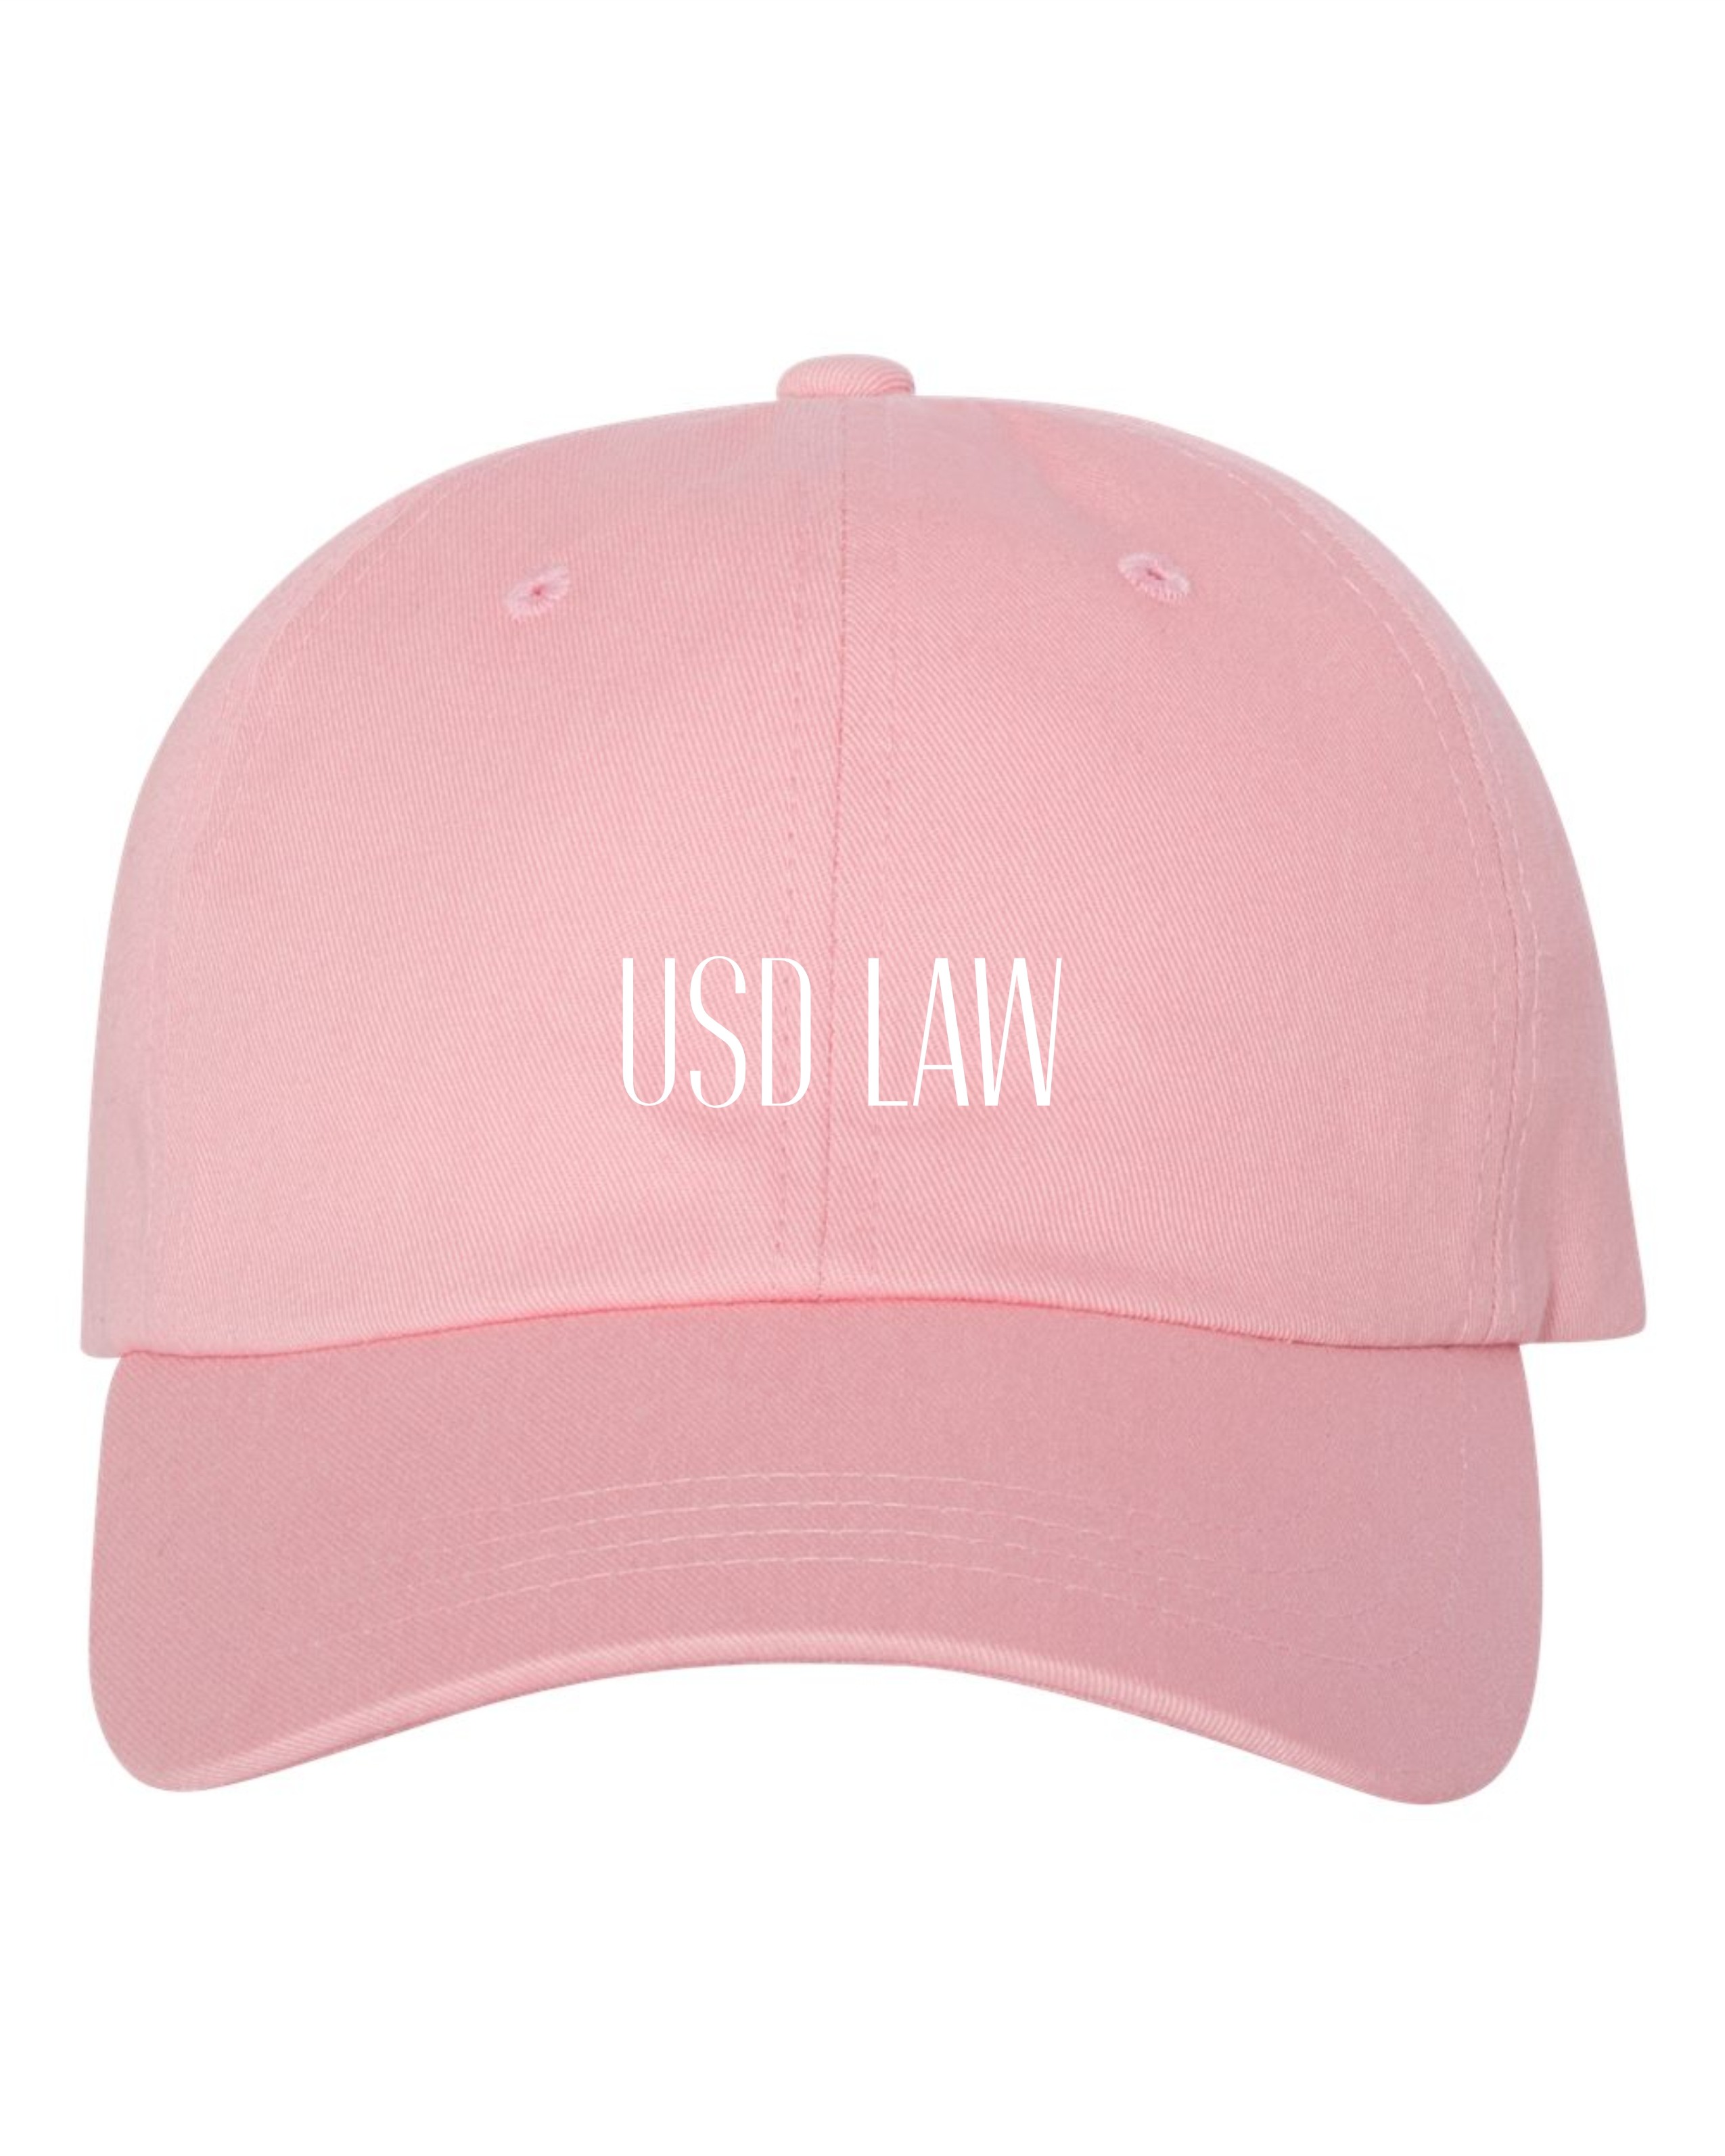 USD Law Cap - Pink